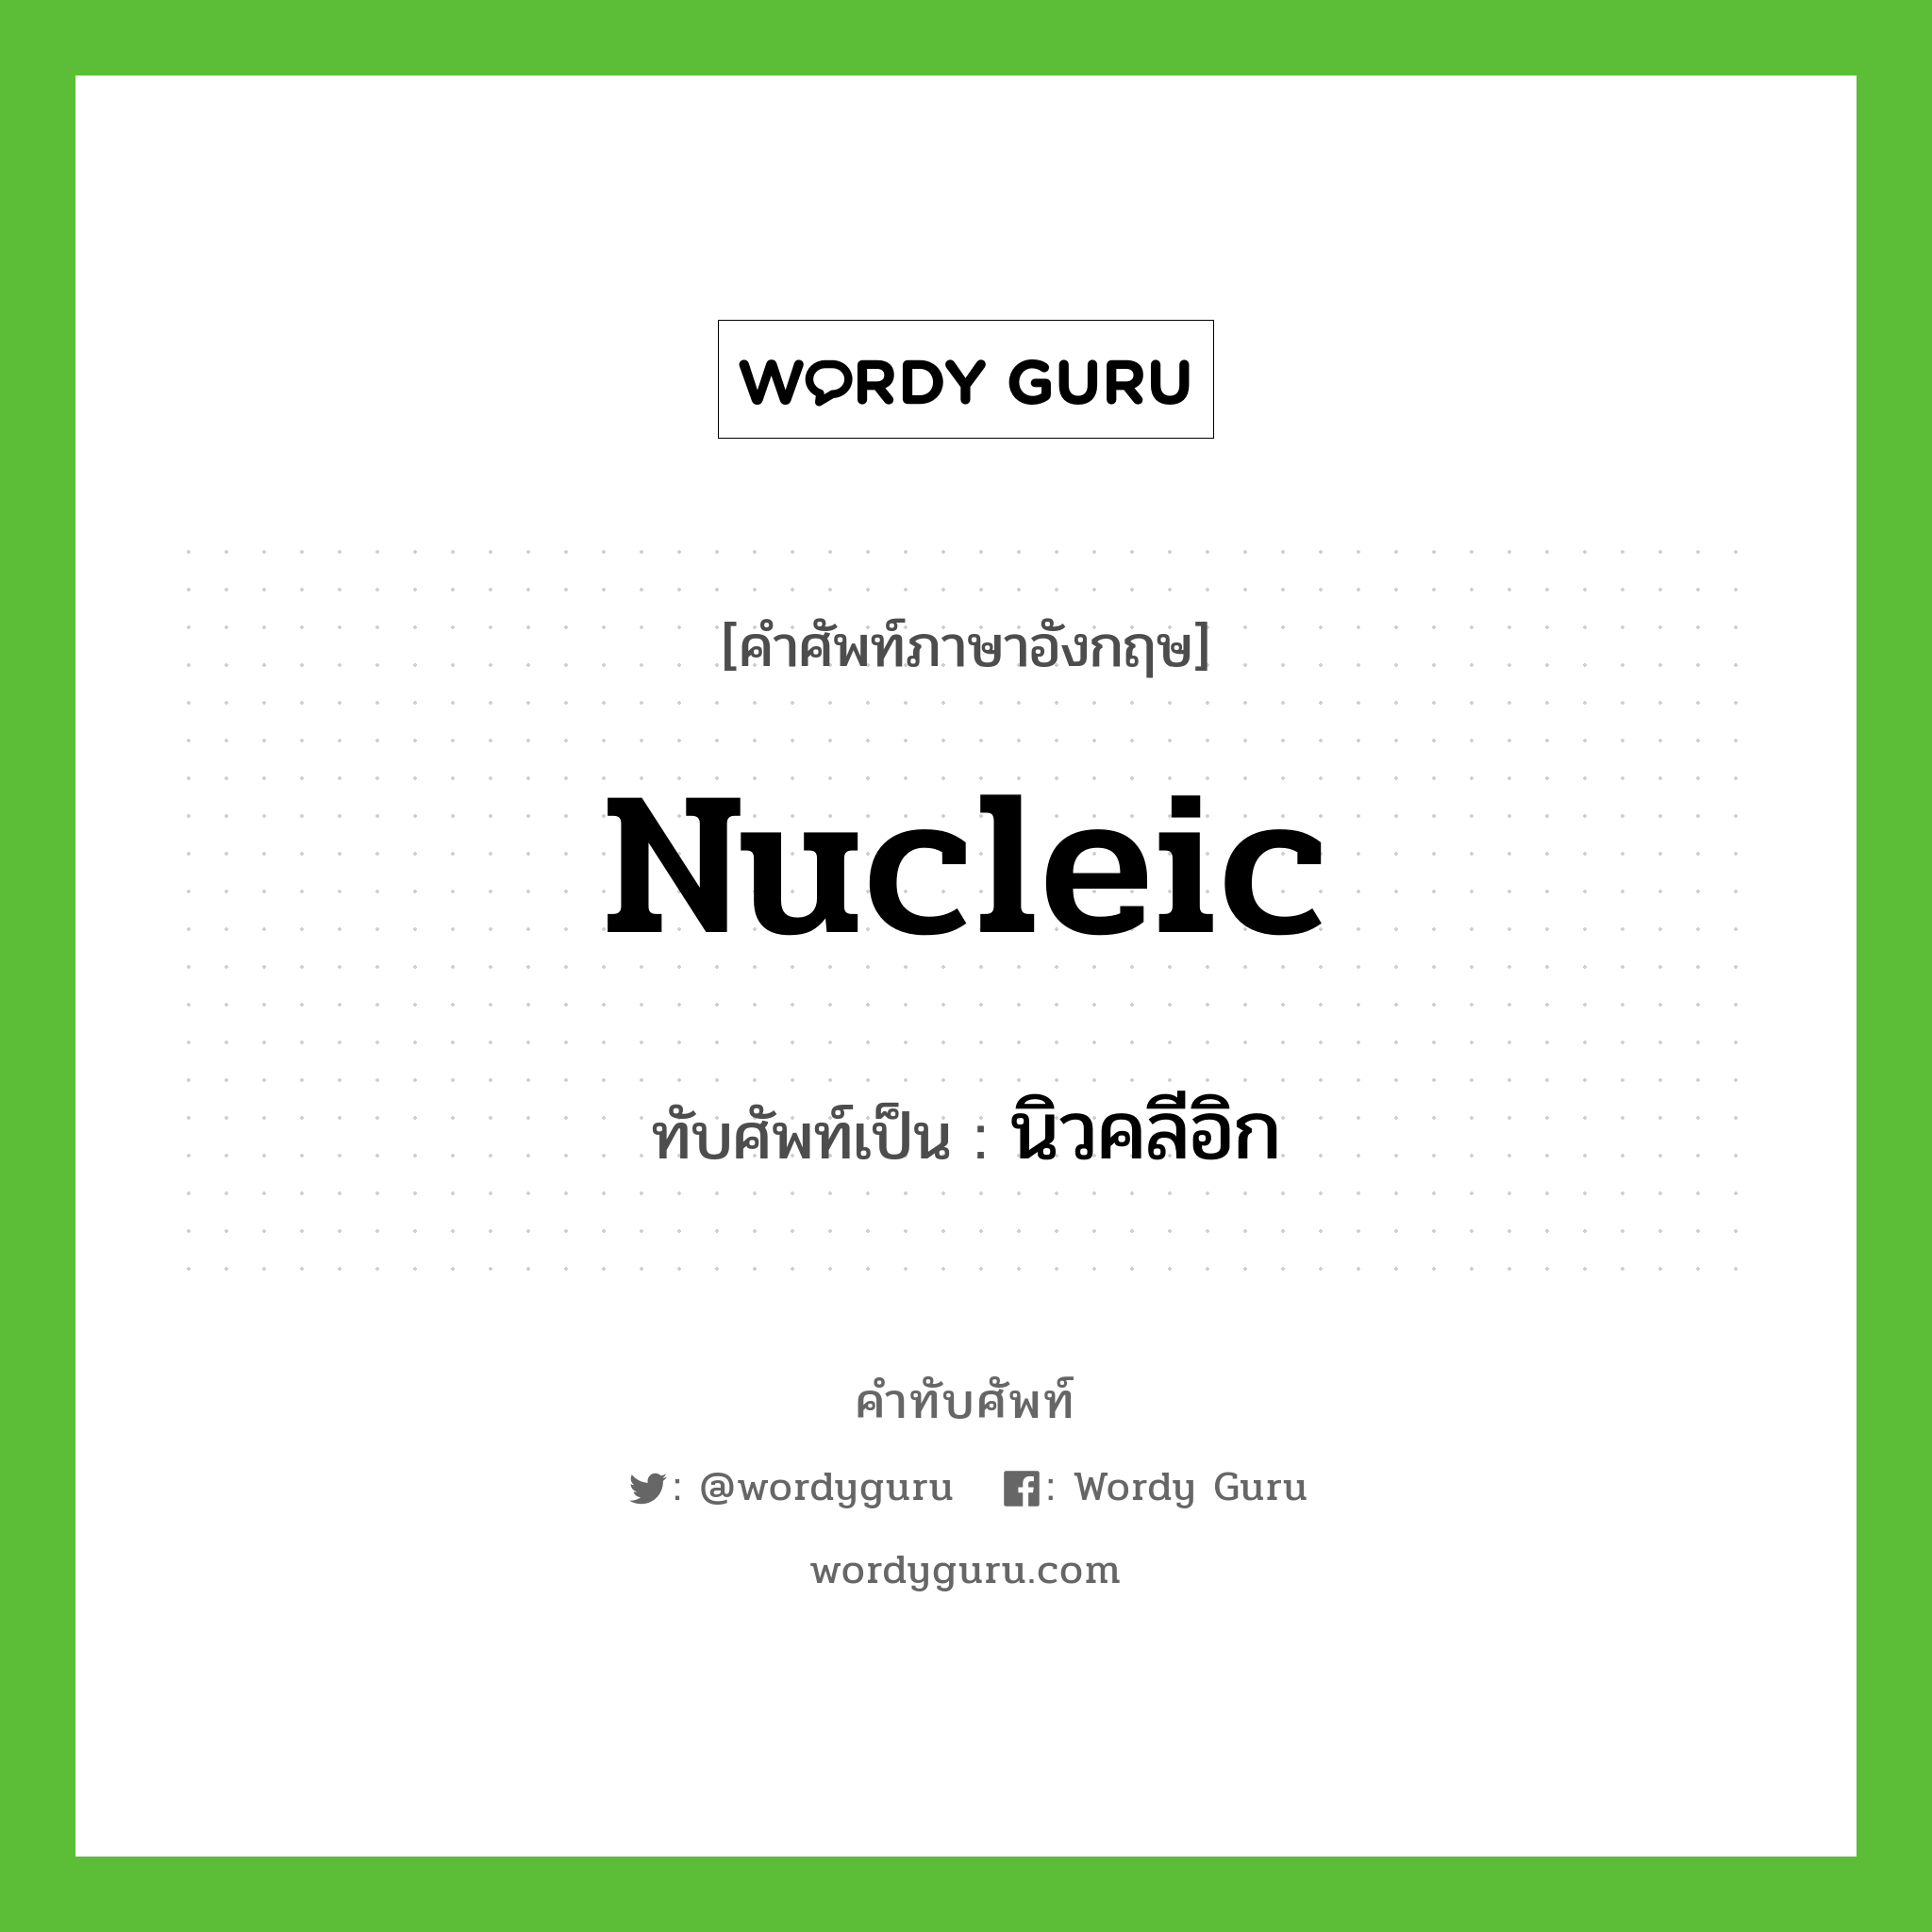 นิวคลีอิก เขียนอย่างไร?, คำศัพท์ภาษาอังกฤษ นิวคลีอิก ทับศัพท์เป็น nucleic